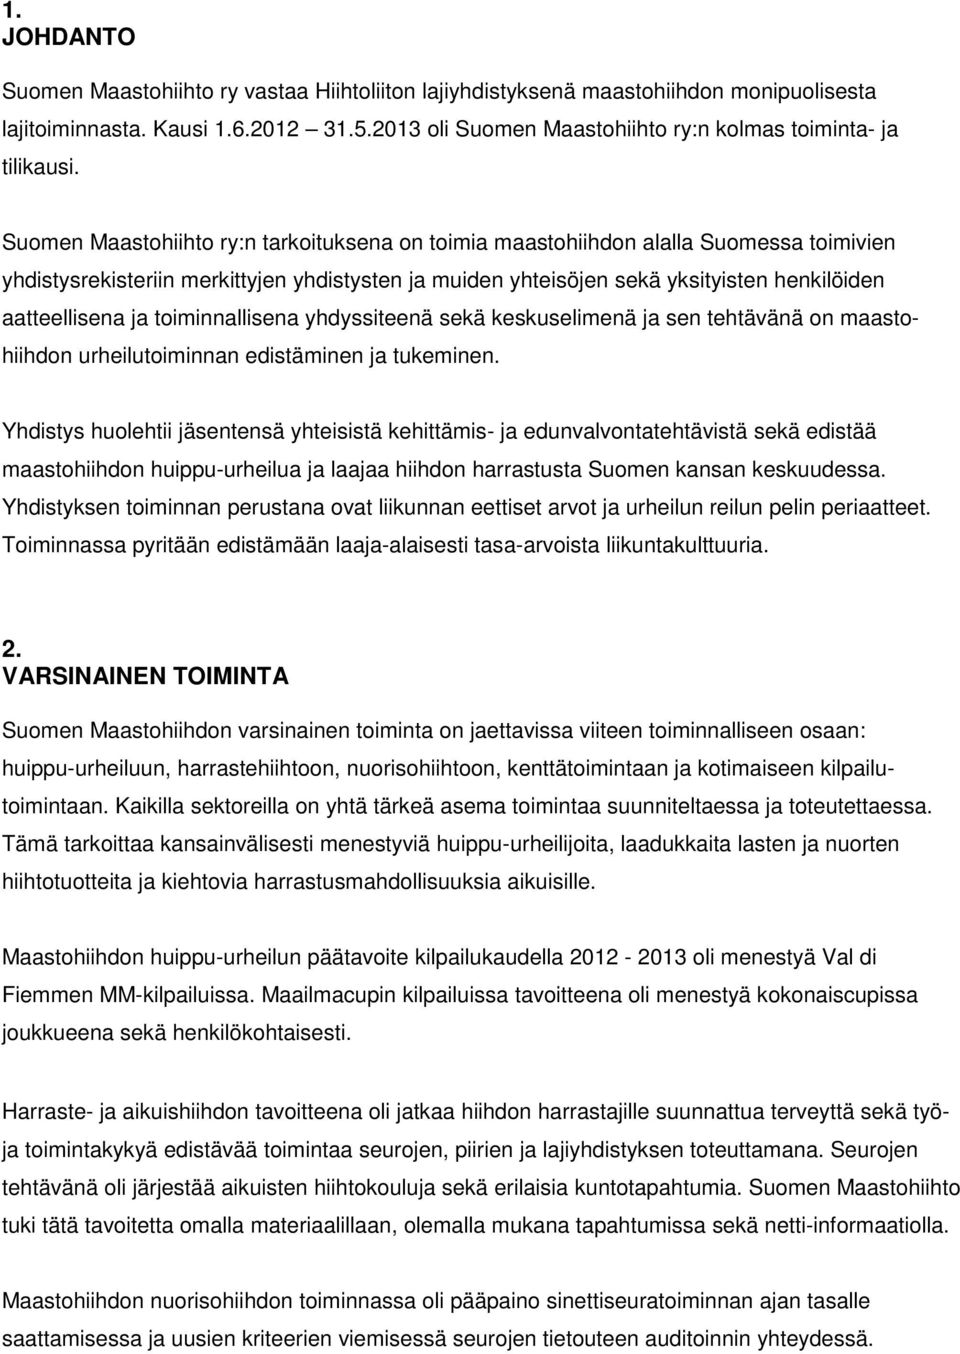 Suomen Maastohiihto ry:n tarkoituksena on toimia maastohiihdon alalla Suomessa toimivien yhdistysrekisteriin merkittyjen yhdistysten ja muiden yhteisöjen sekä yksityisten henkilöiden aatteellisena ja